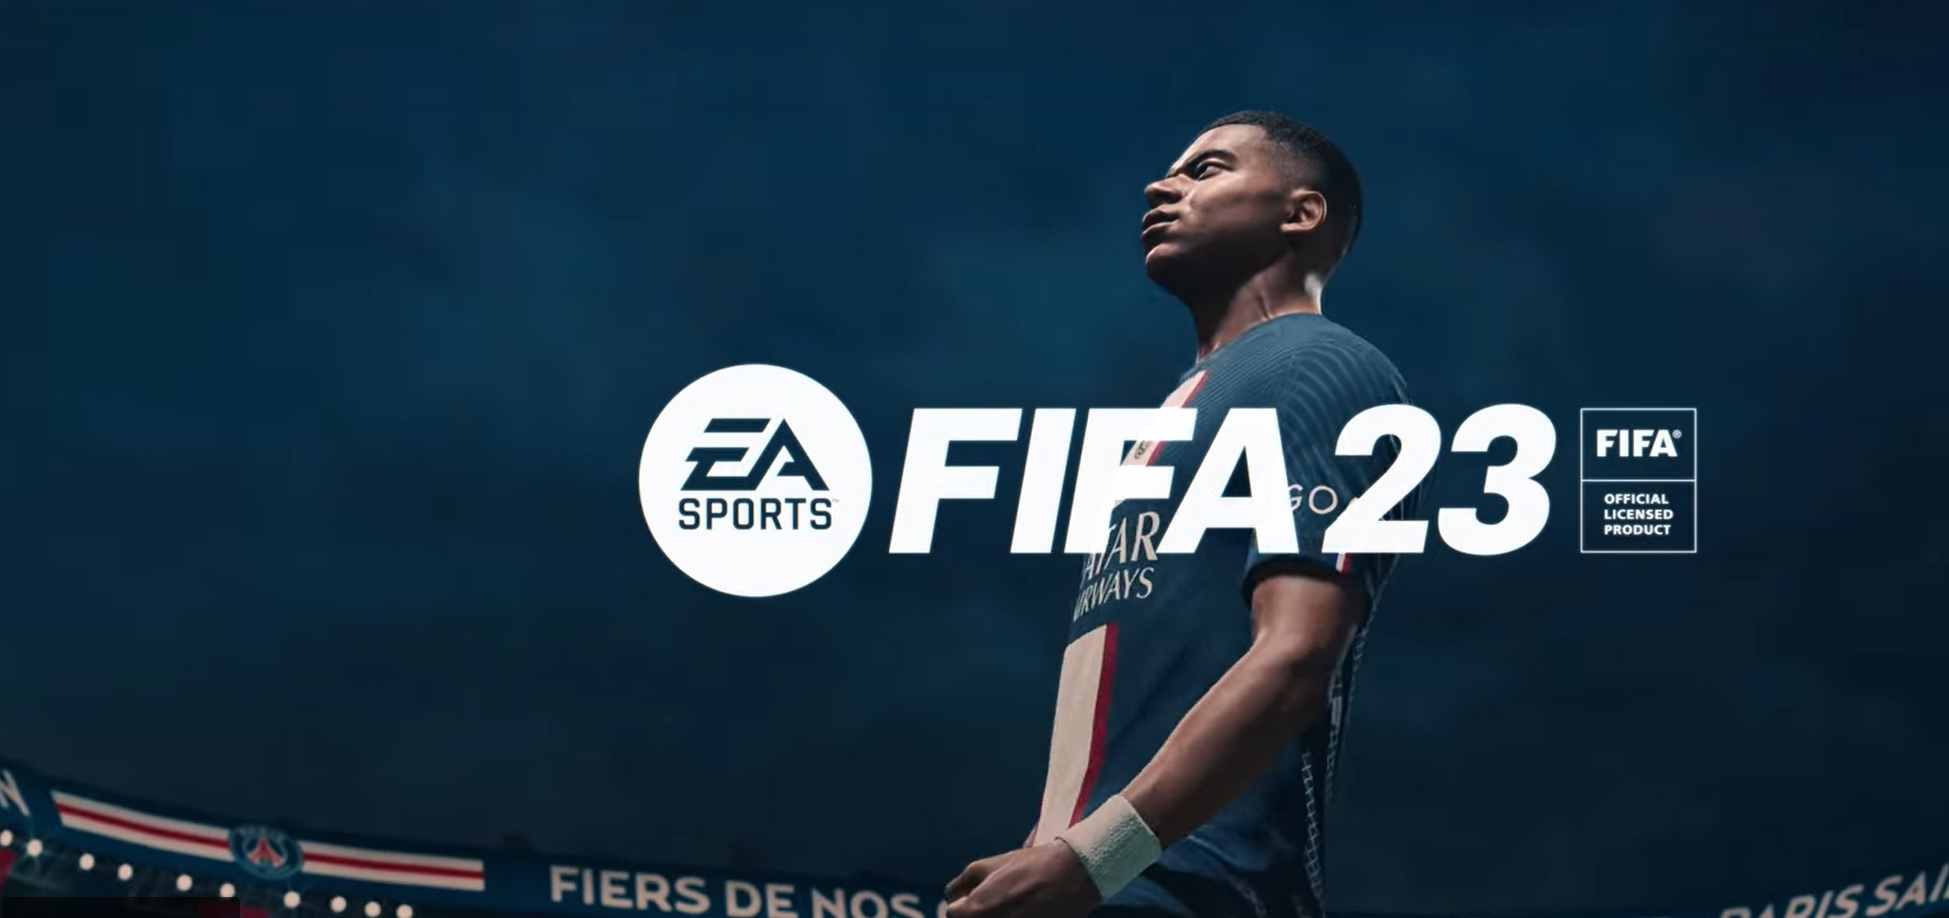 FIFA 23 viene lanciato oggi in tutto il mondo